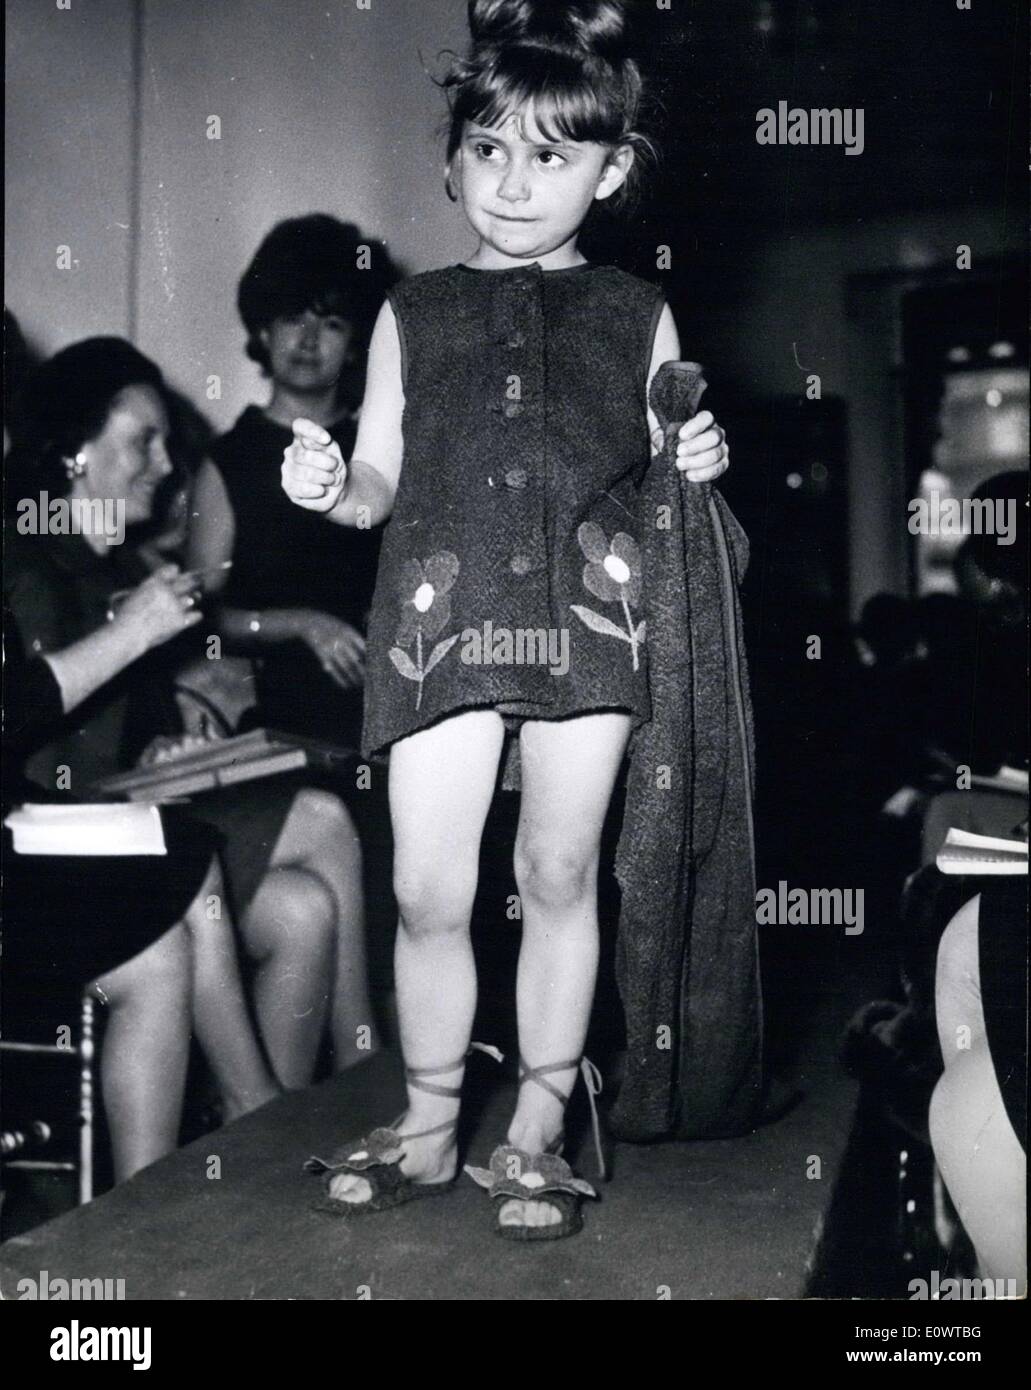 Le 26 février 1964 - Haute Couture pour les enfants. À Paris, le centre  européen de la mode, la nouvelle collection pour les jeunes, c'est pas  oublié non plus dans la turbulente